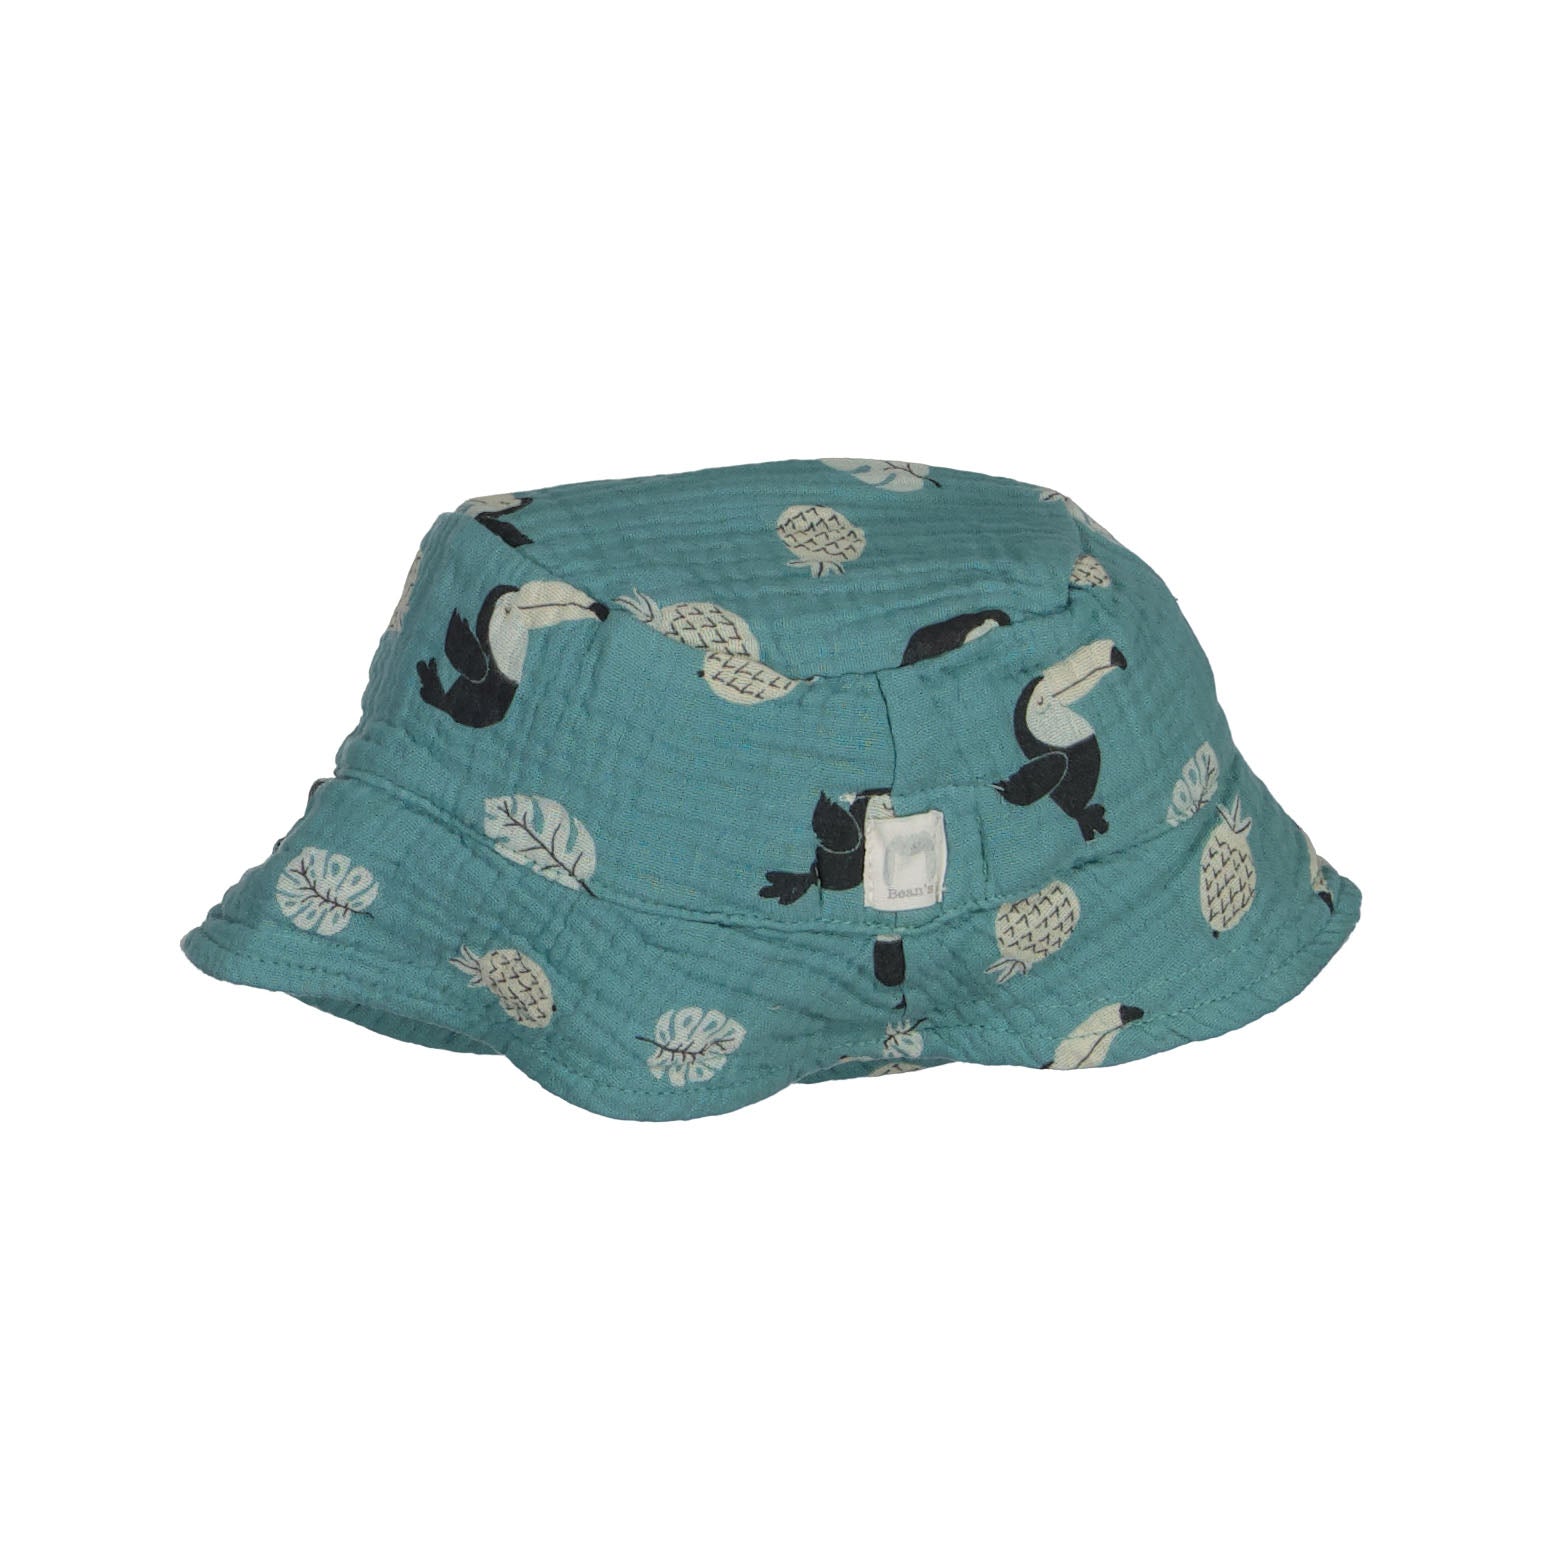 Printed Muslin hat Seagreen